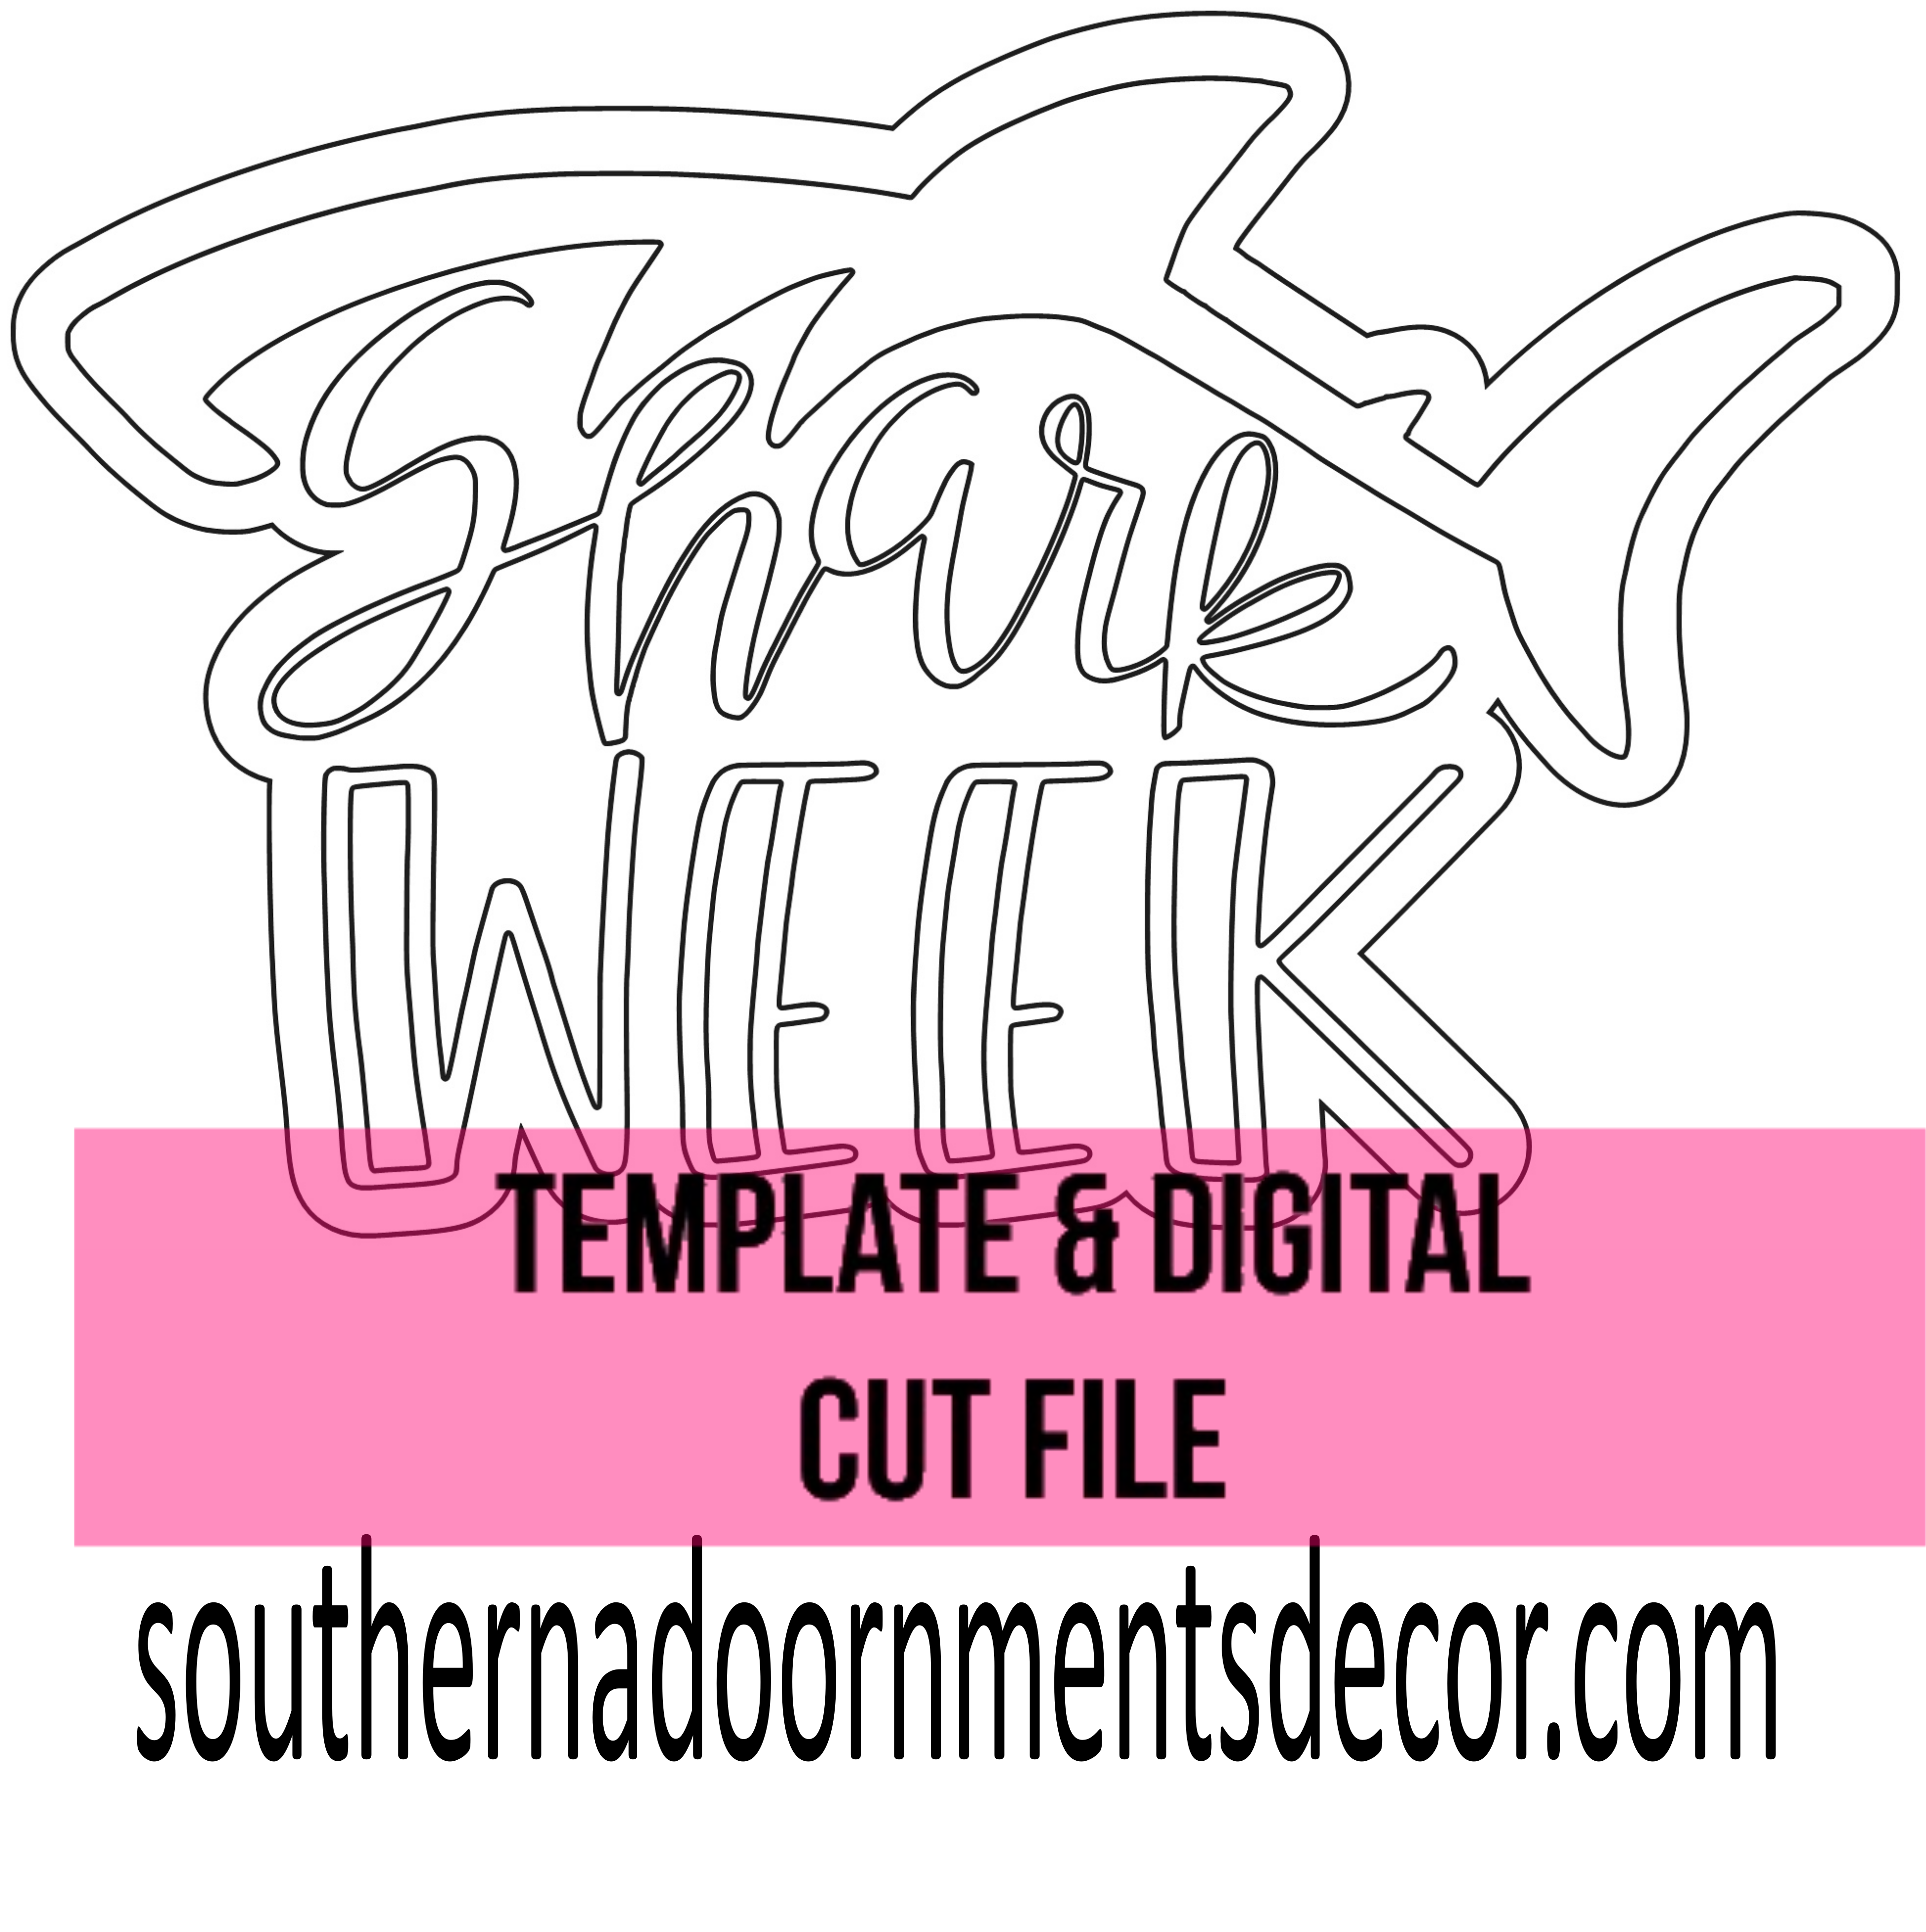 Shark Week Template & Digital Cut File